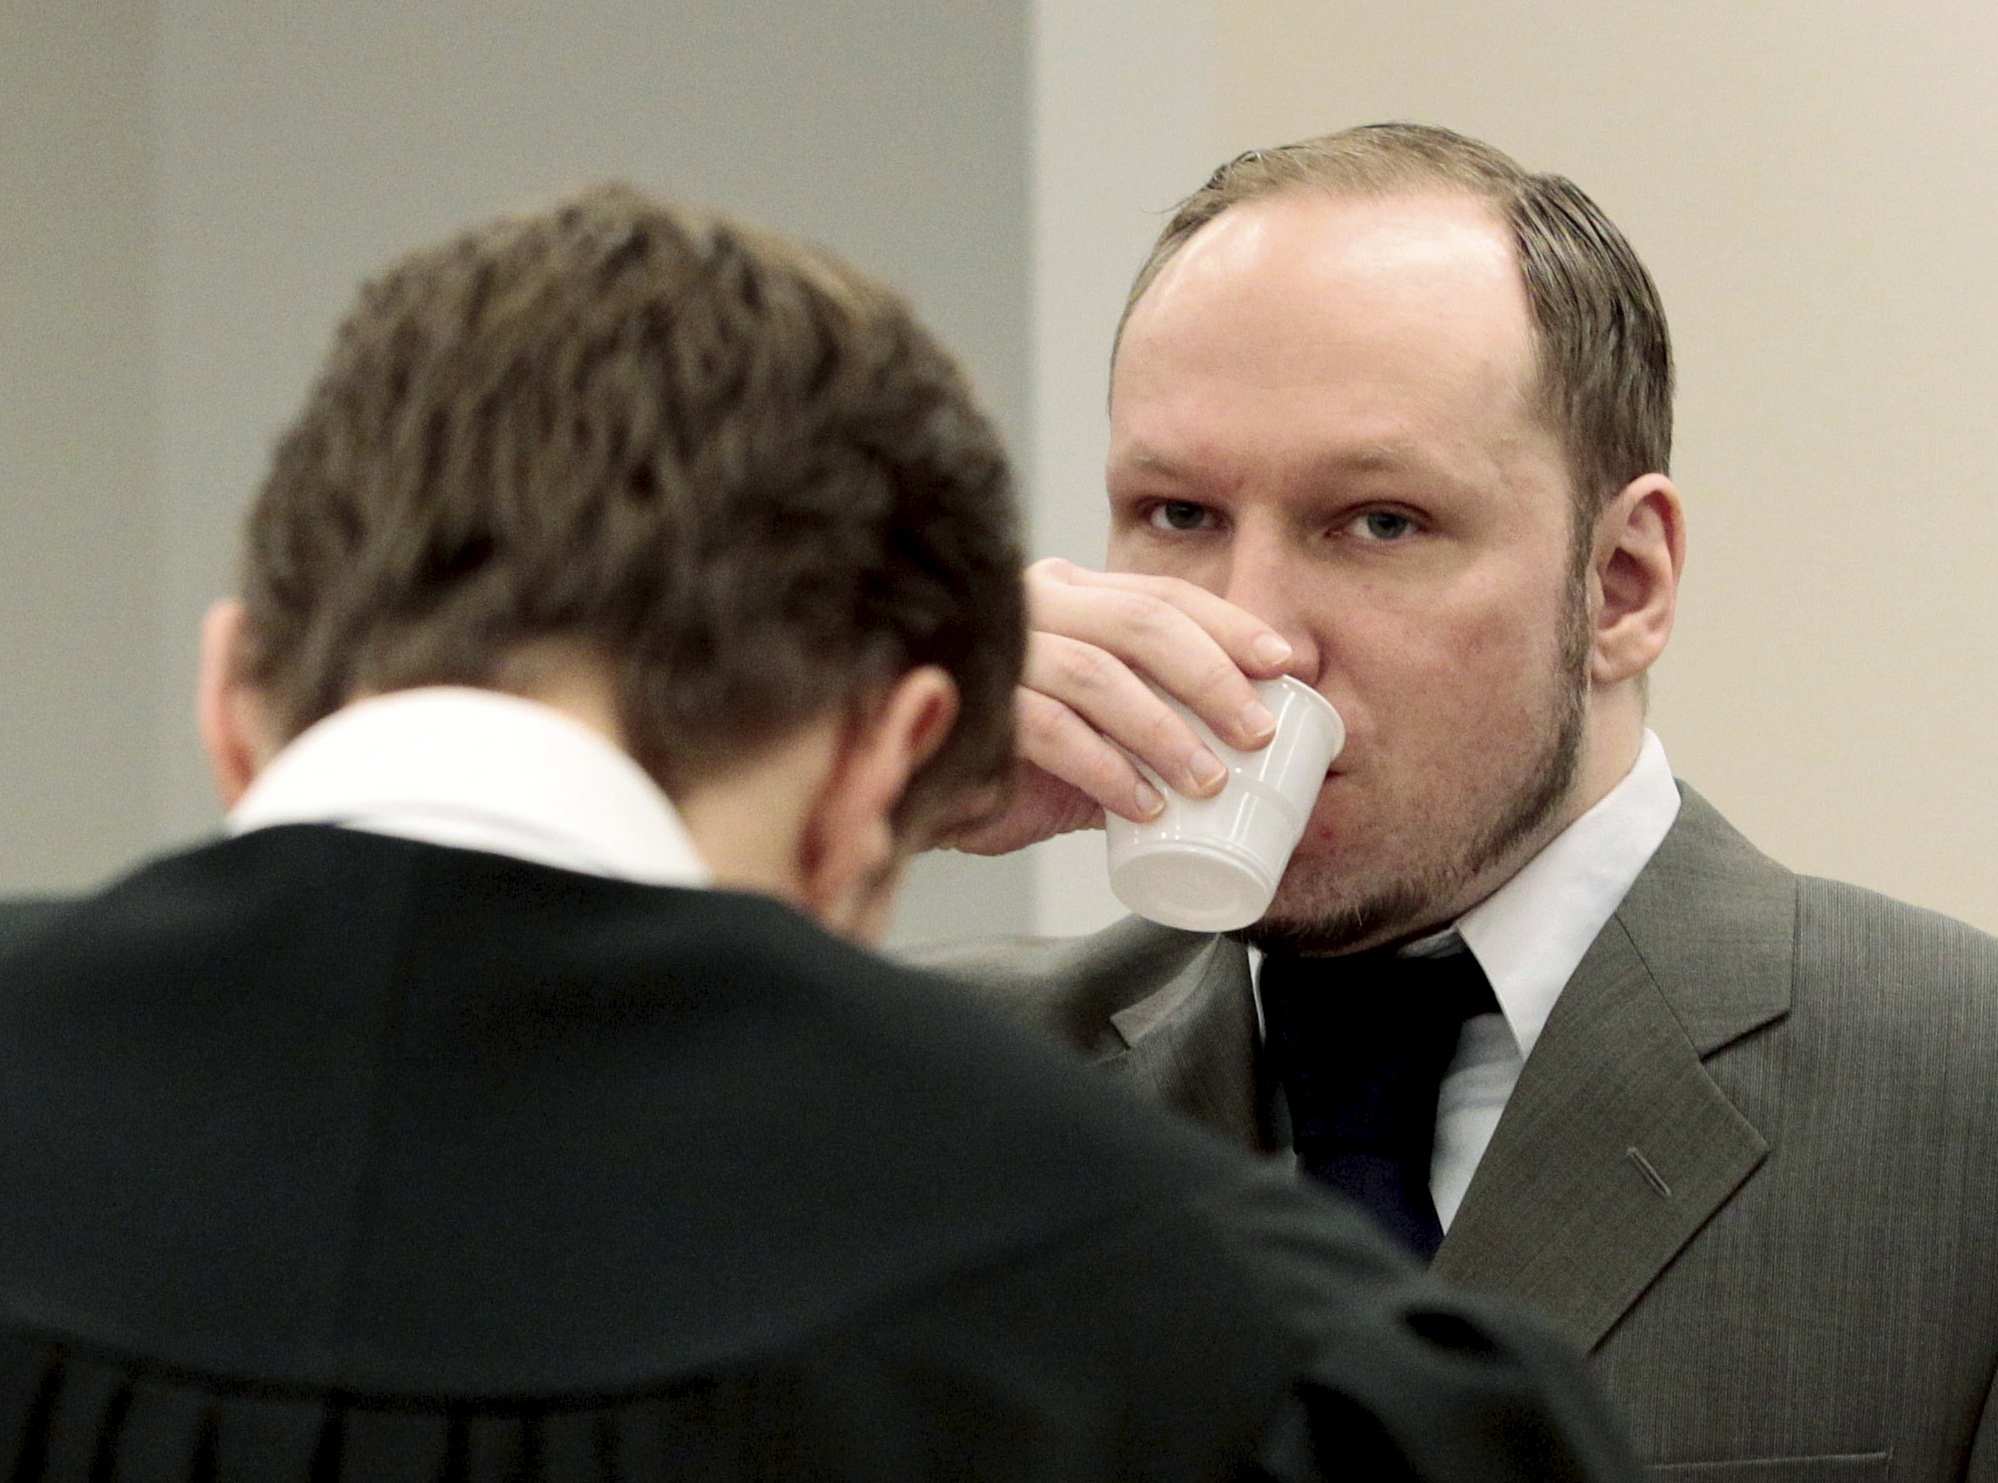 Om rätten bedömer honom som tillräknelig kommer Breivik acceptera domen, inte överklaga.